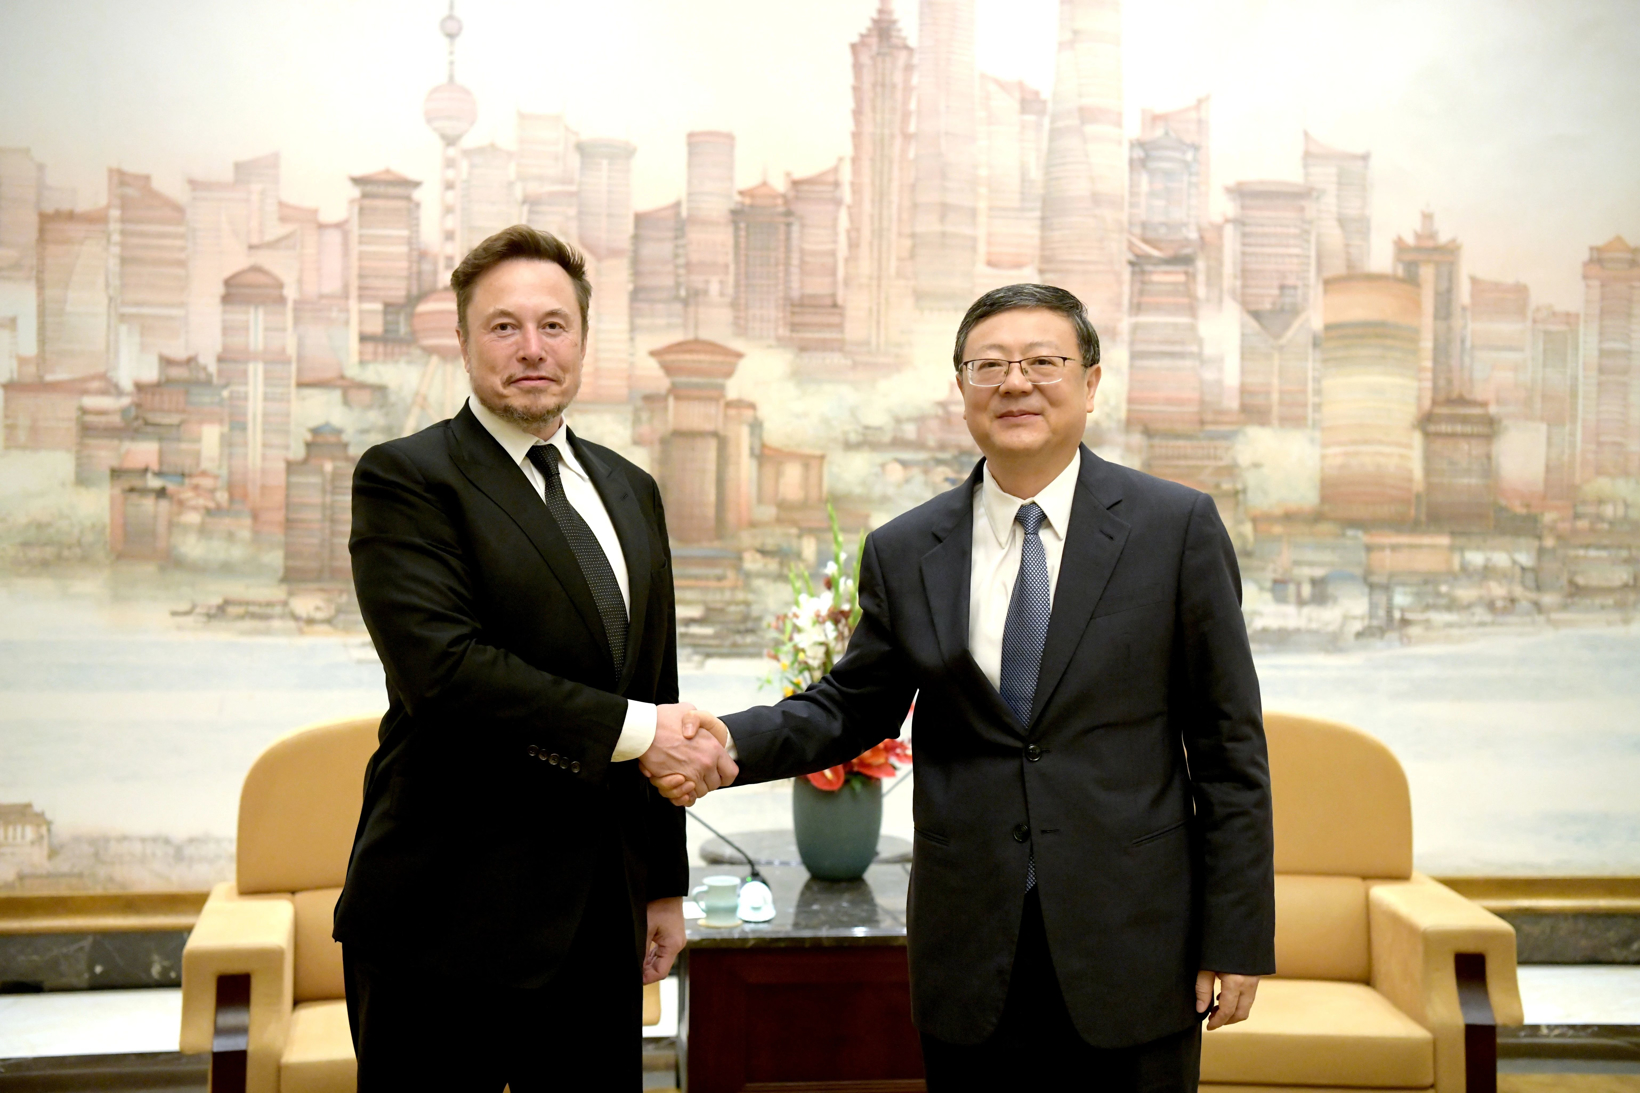 Is-Segretarju tal-Kumitat tal-Partit Muniċipali ta’ Shanghai jiltaqa’ ma’ Elon Musk